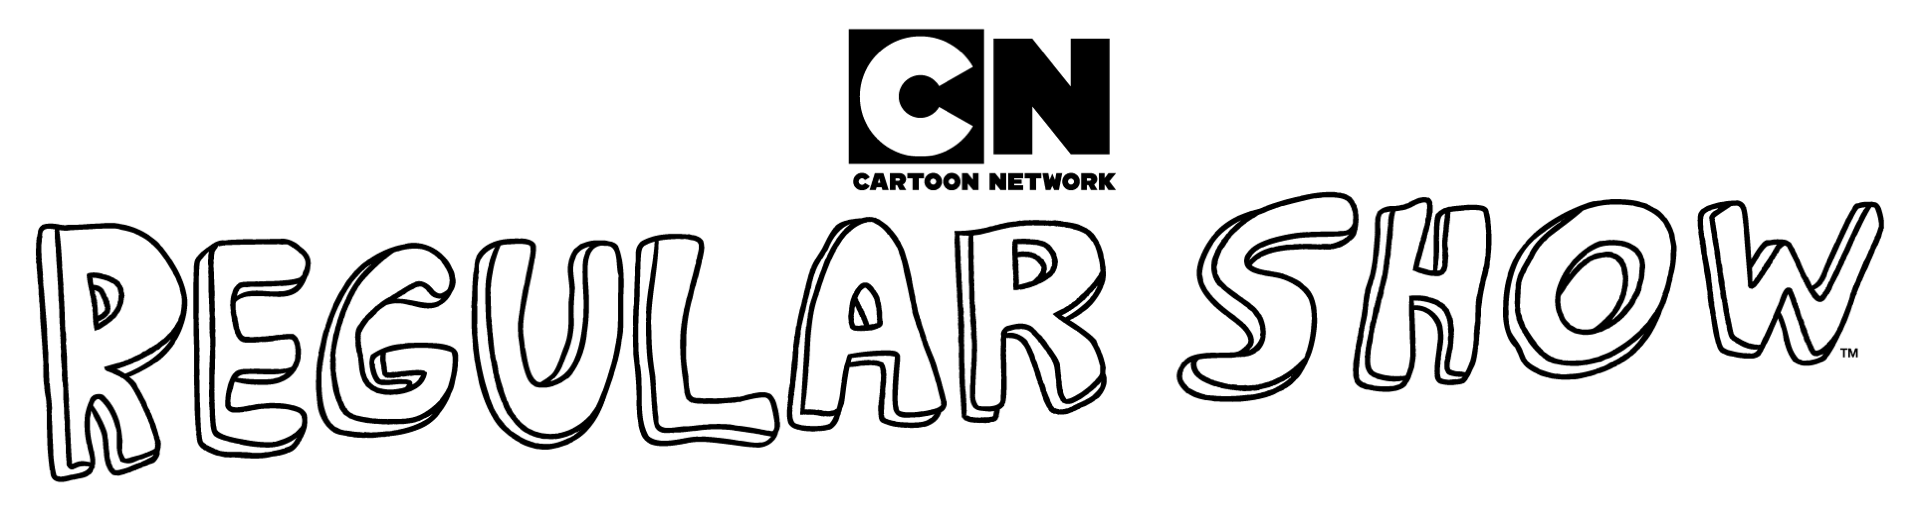 Cartoon Network Brasil: Novo Jogo de Apenas um Show 'Paint War